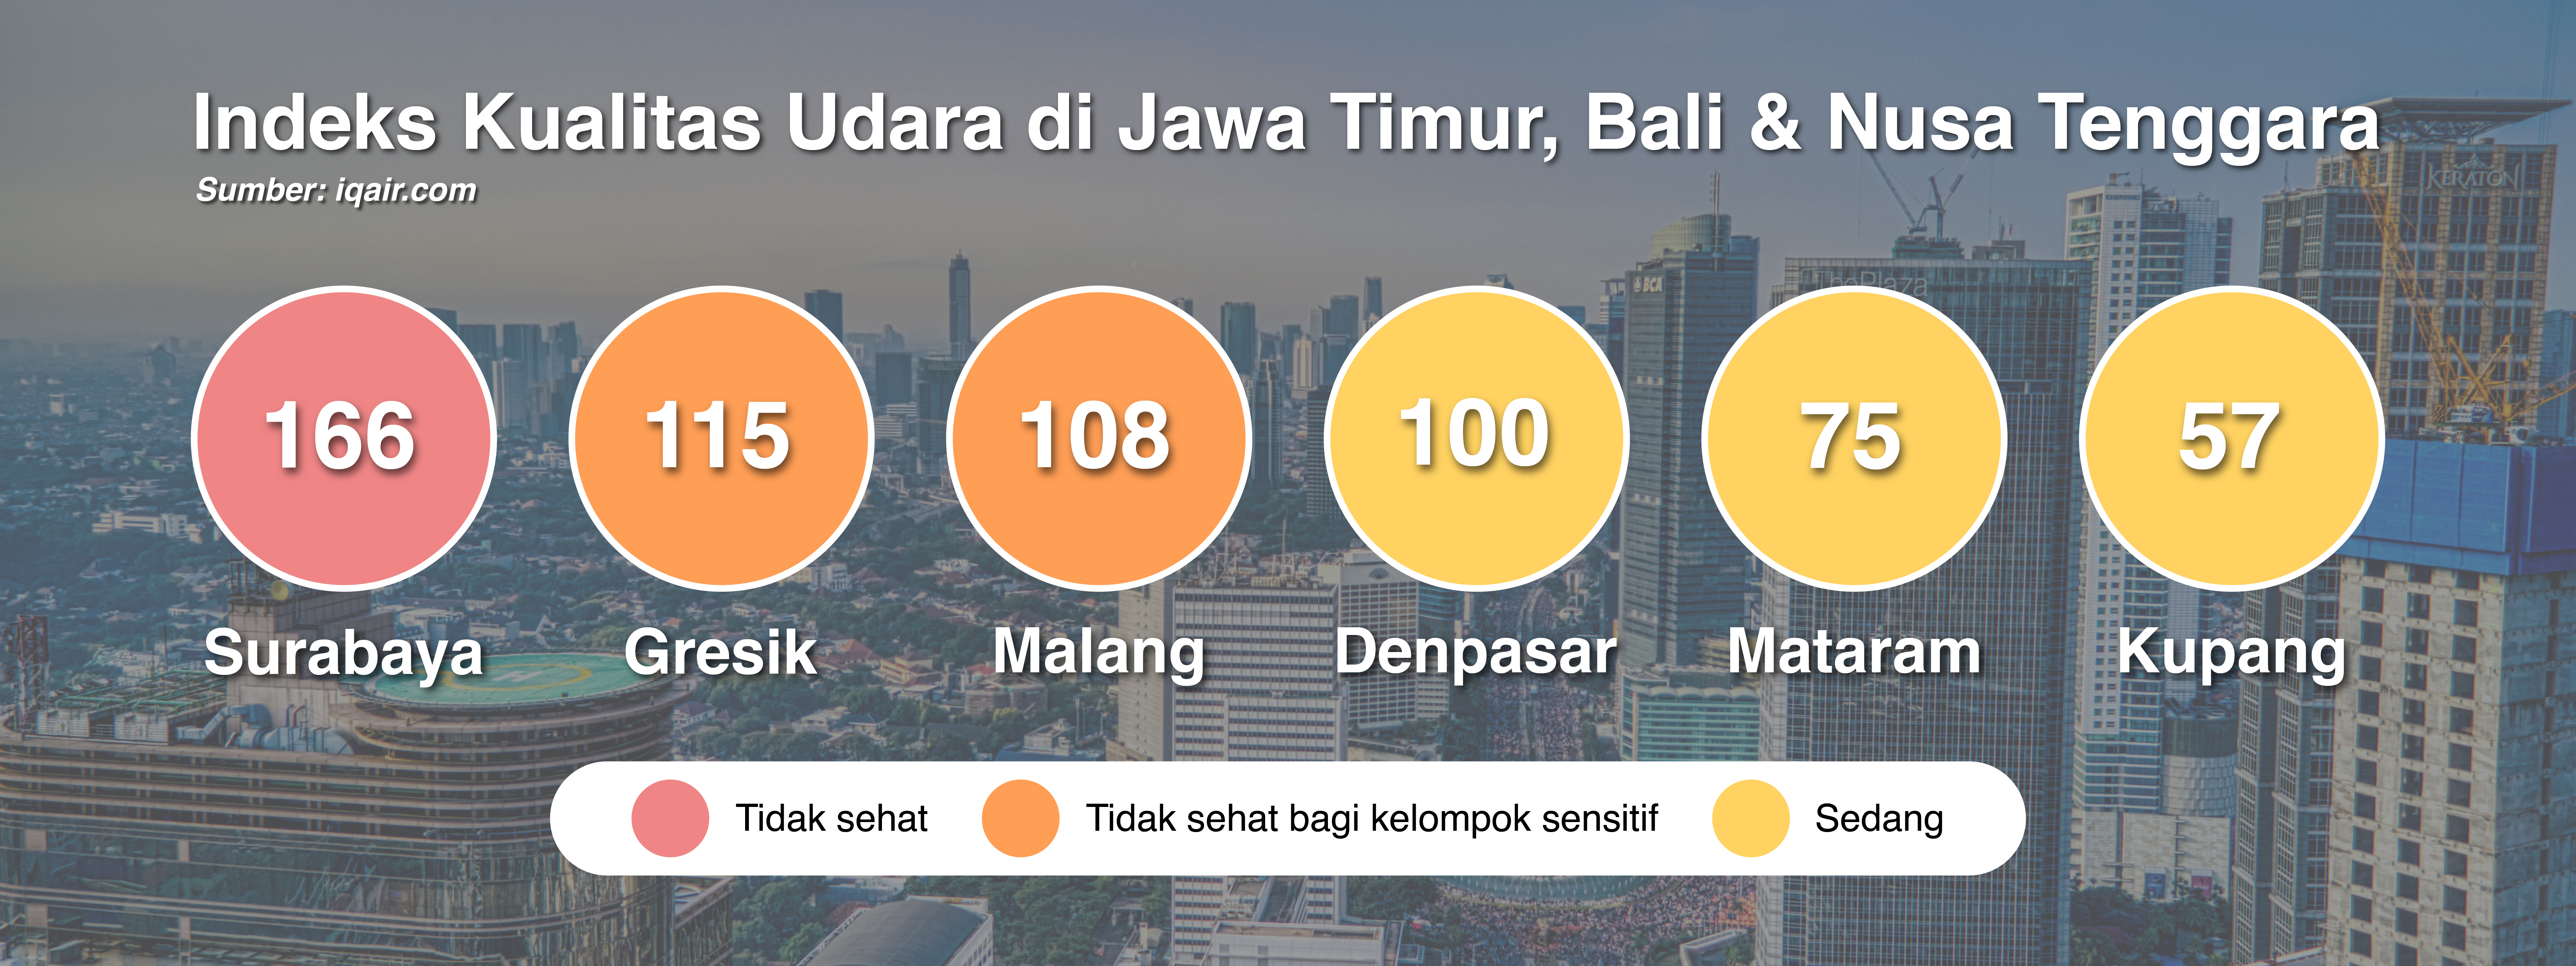 Indeks Kualitas Udara di Jawa Timur, Bali dan Nusa Tenggara